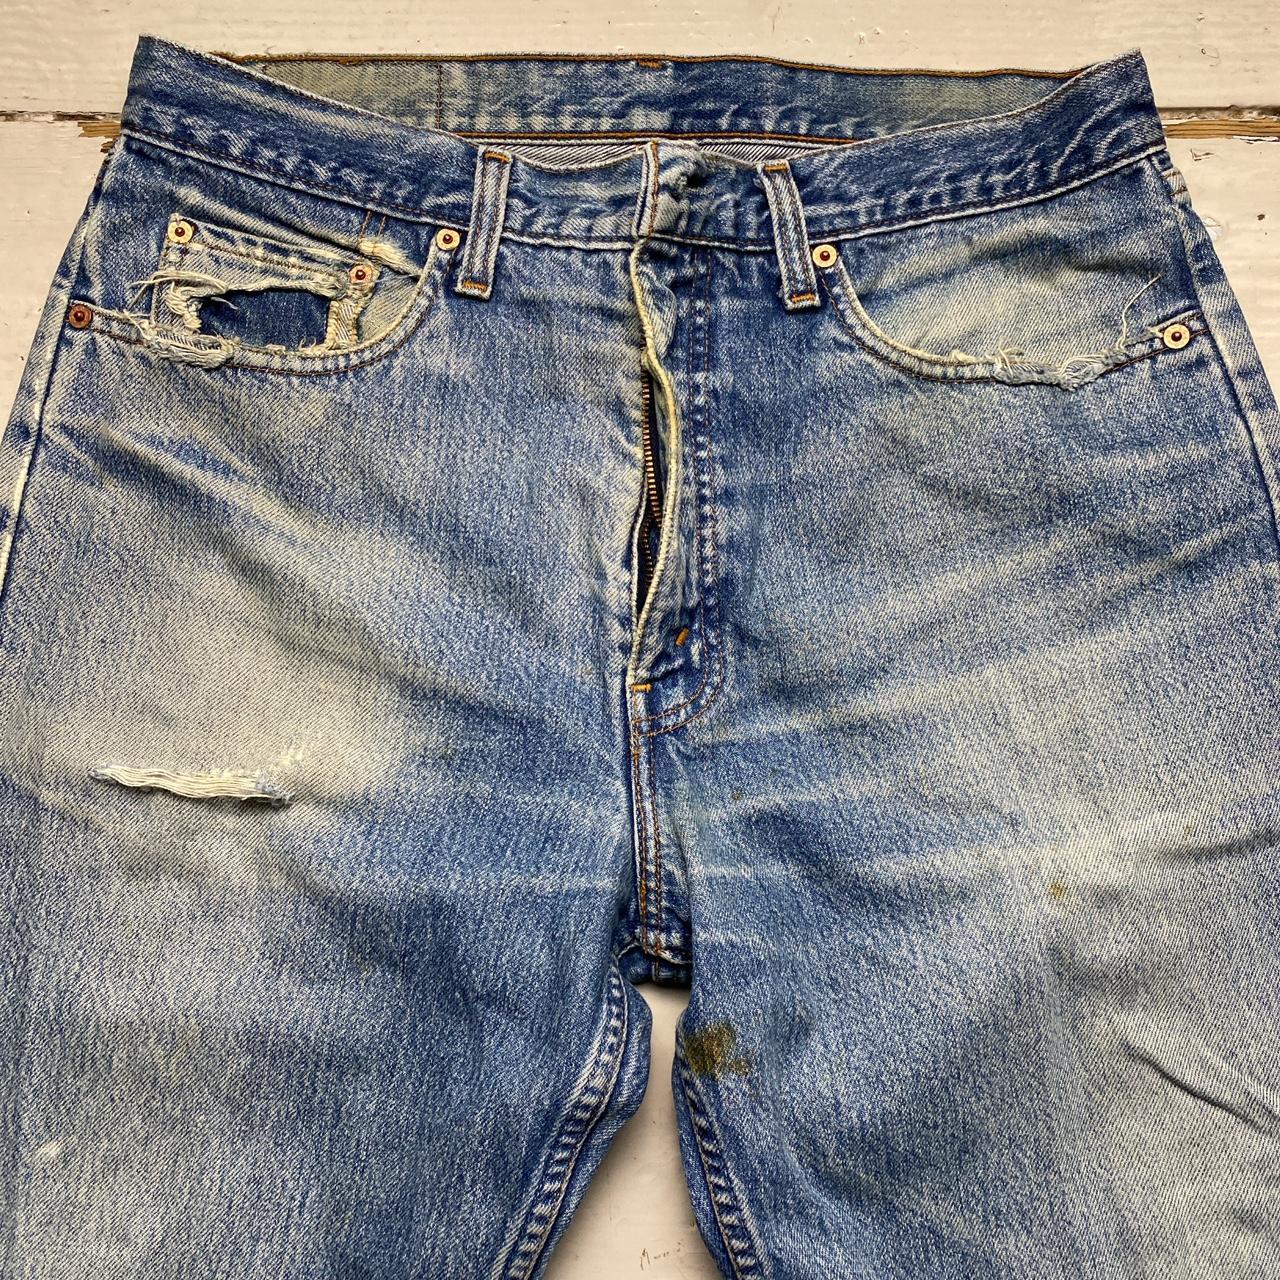 Levis Vintage 615 02 Made in UK Light Blue Stonewash Orange Tab Baggy Jeans